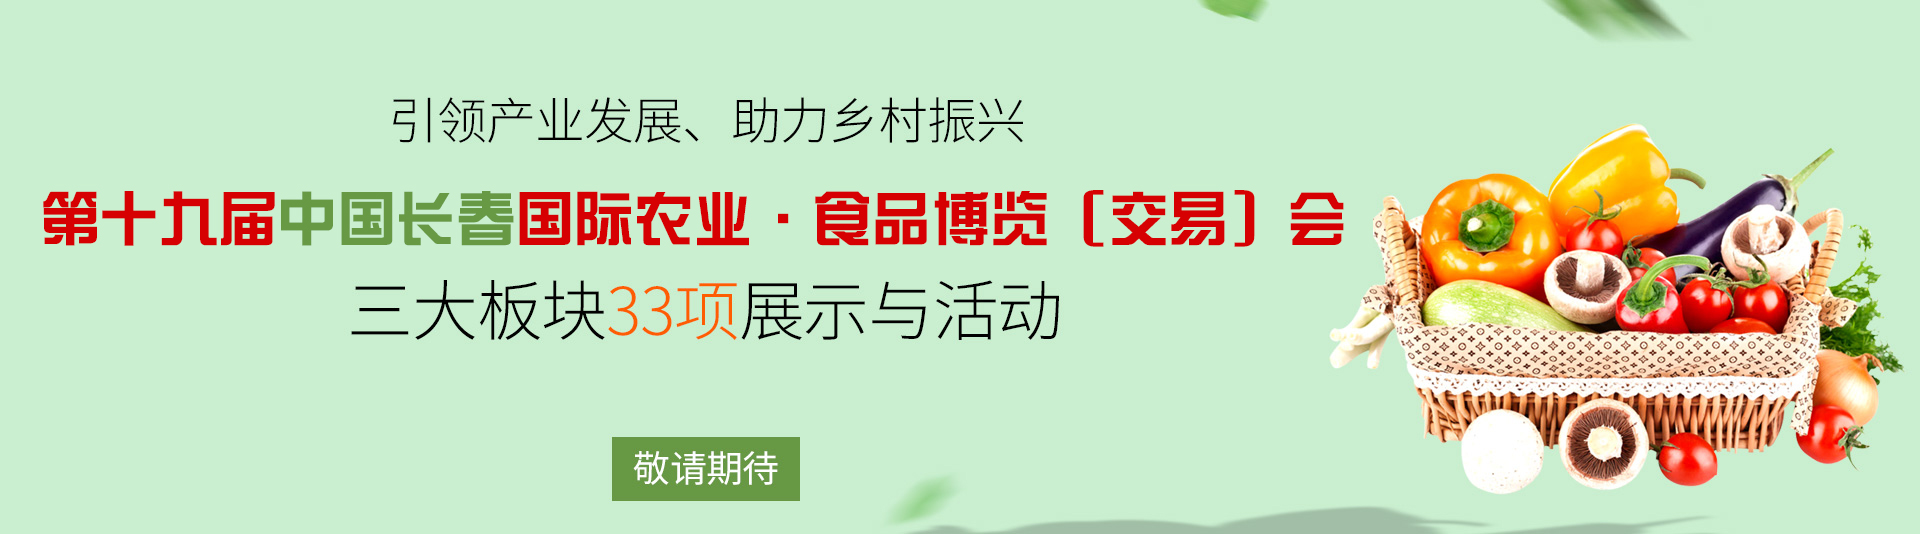 第十九届中国长春国际农业产品交易博览会敬请期待